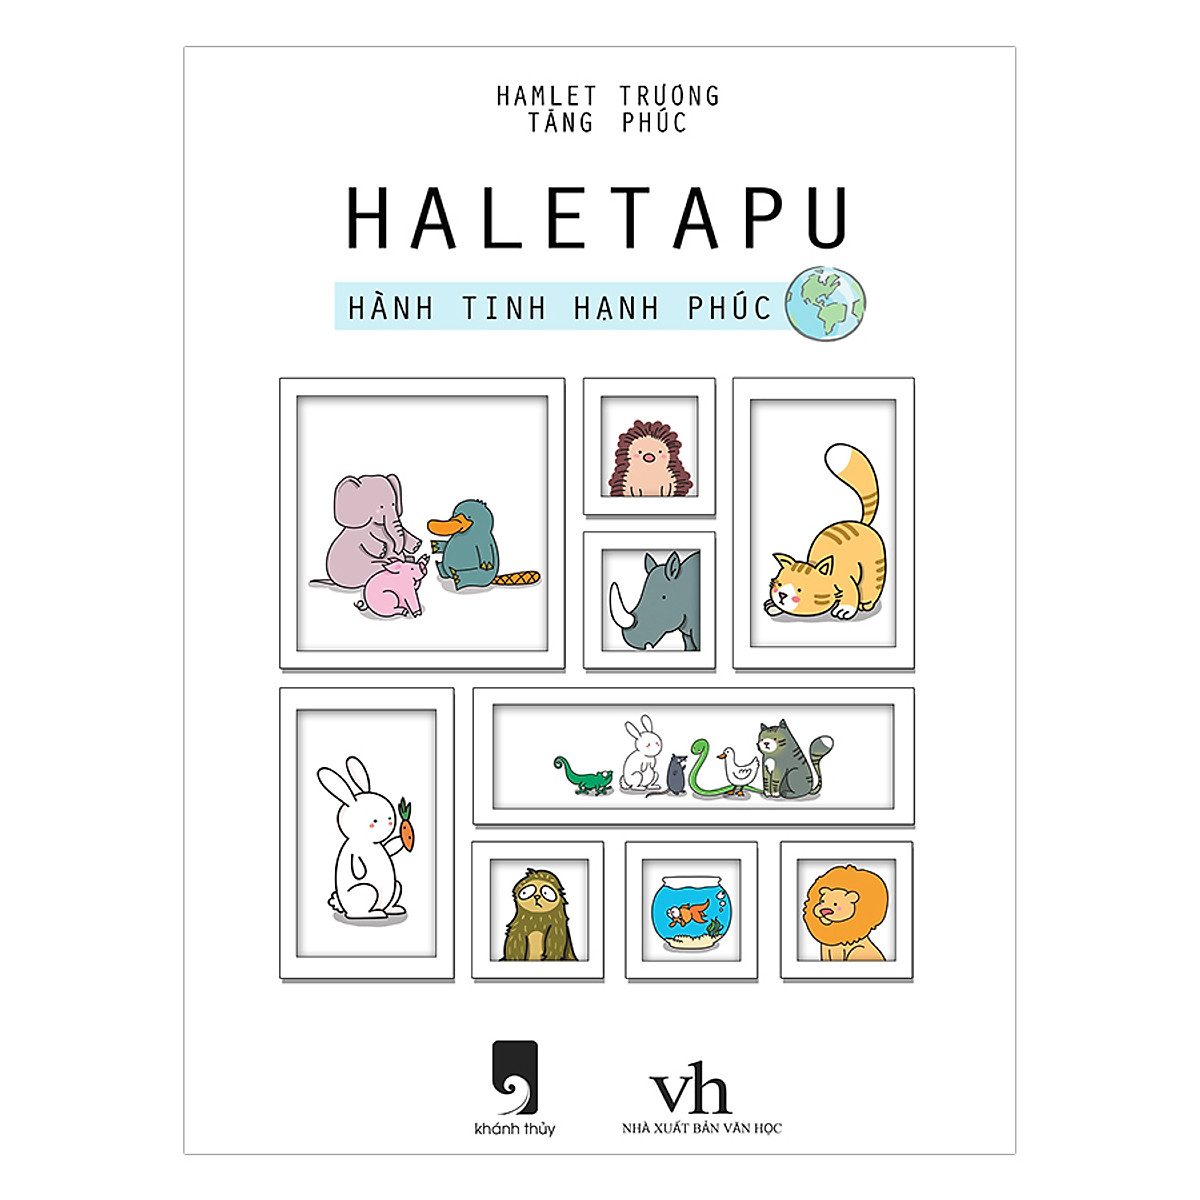 Haletapu - Hành Tinh Hạnh Phúc